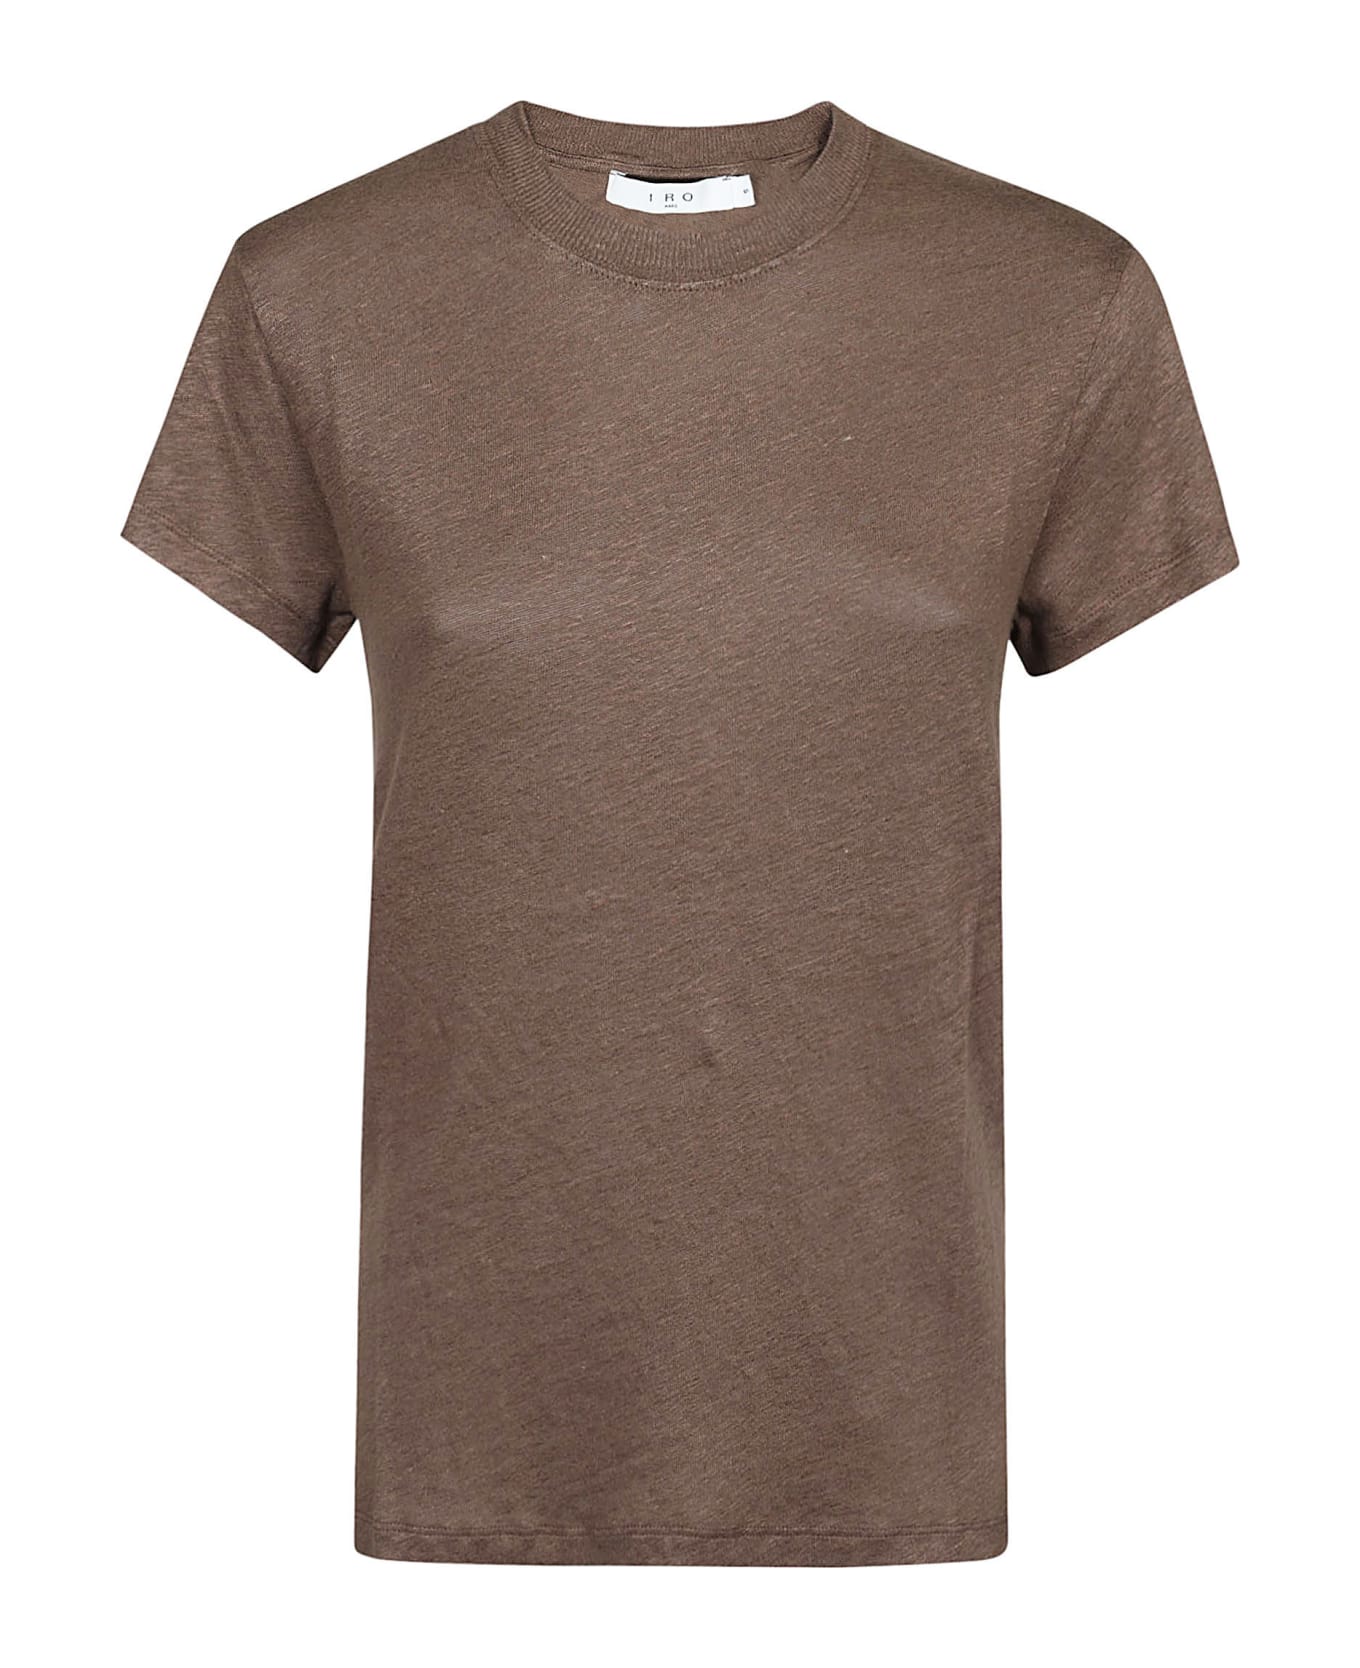 IRO Third T-shirt - Brown